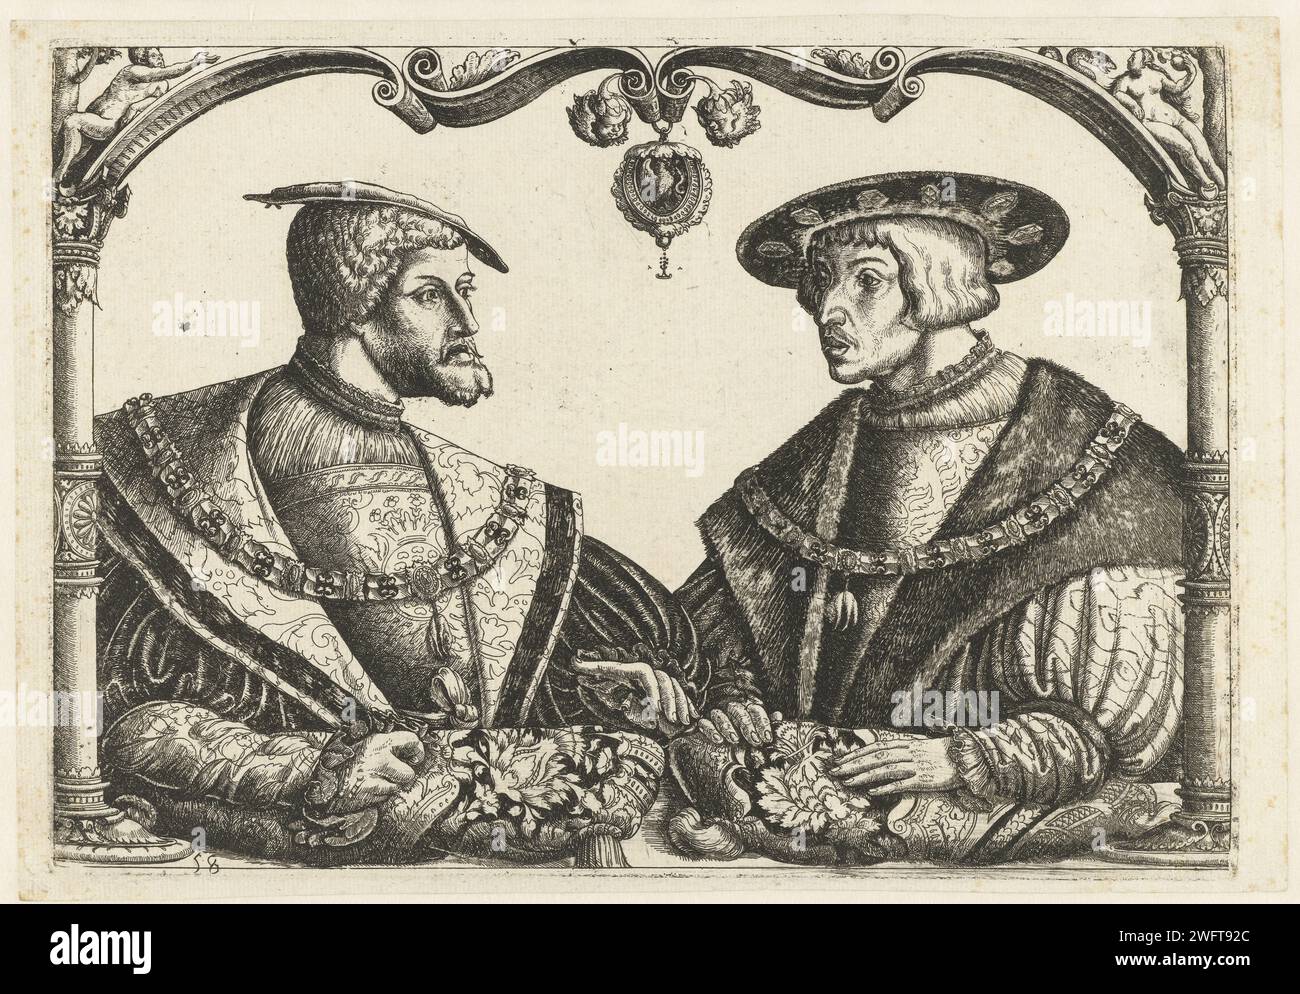 Karel V en Ferdinand I, Monogrammiste CB met boom (attribué à), 1513 - 1553 tirage Portrait de Charles V et de son frère Ferdinand I dans un cadre architectural. Au milieu, il y a un médaillon avec la lettre L (?) A, peut-être un monogramme d'un imprimeur. Gravure de papier Allemagne Banque D'Images